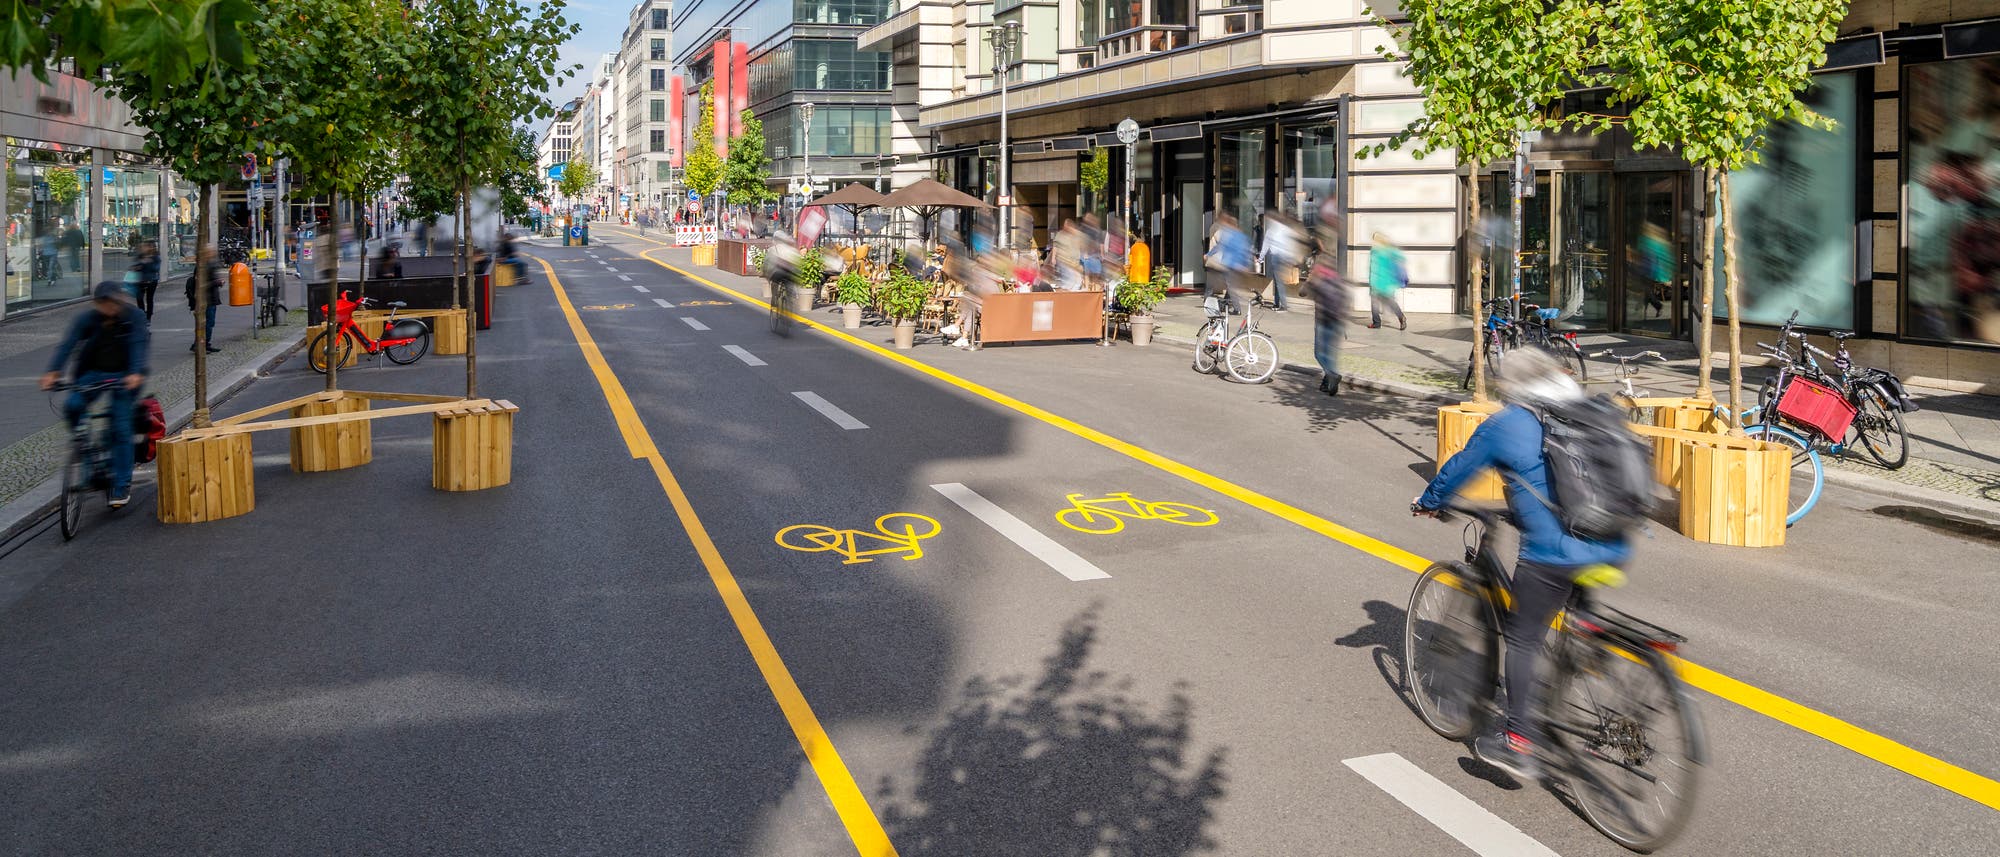 Eine Straße ist umgestaltet worden in eine Fläche für Radfahrer und Fußgänger